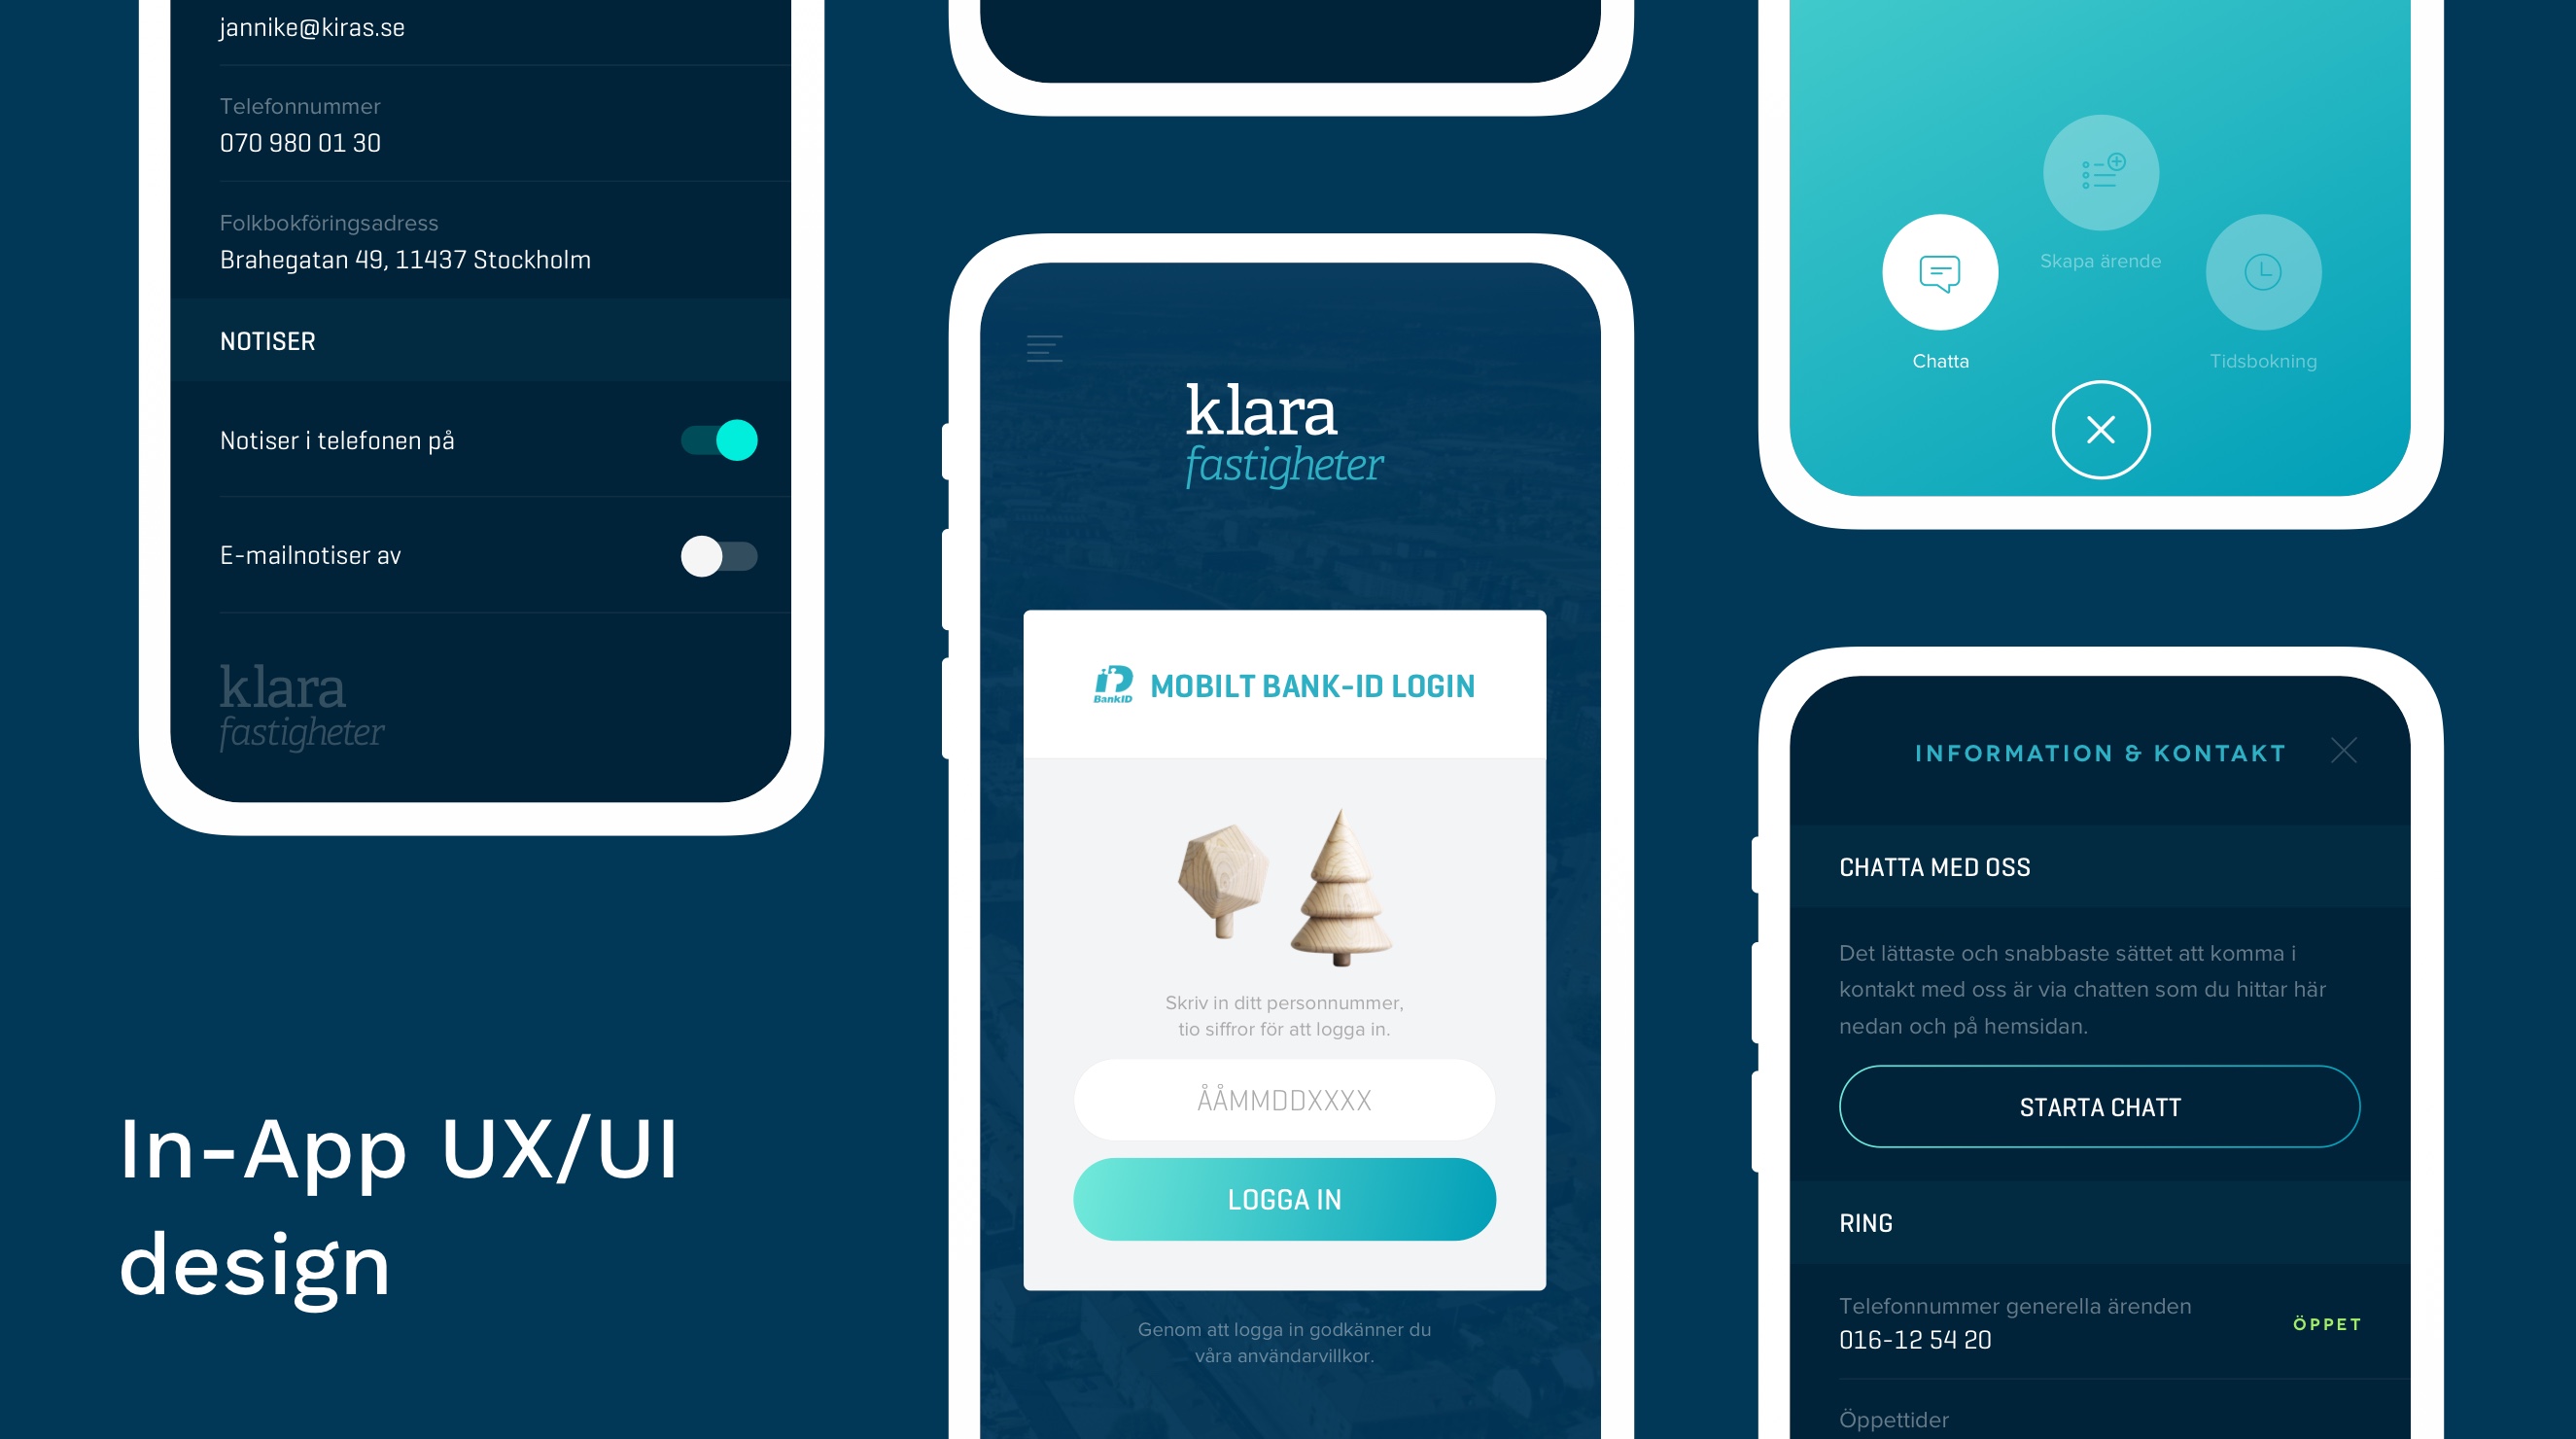 Klara Fastigheter app UX/UI design